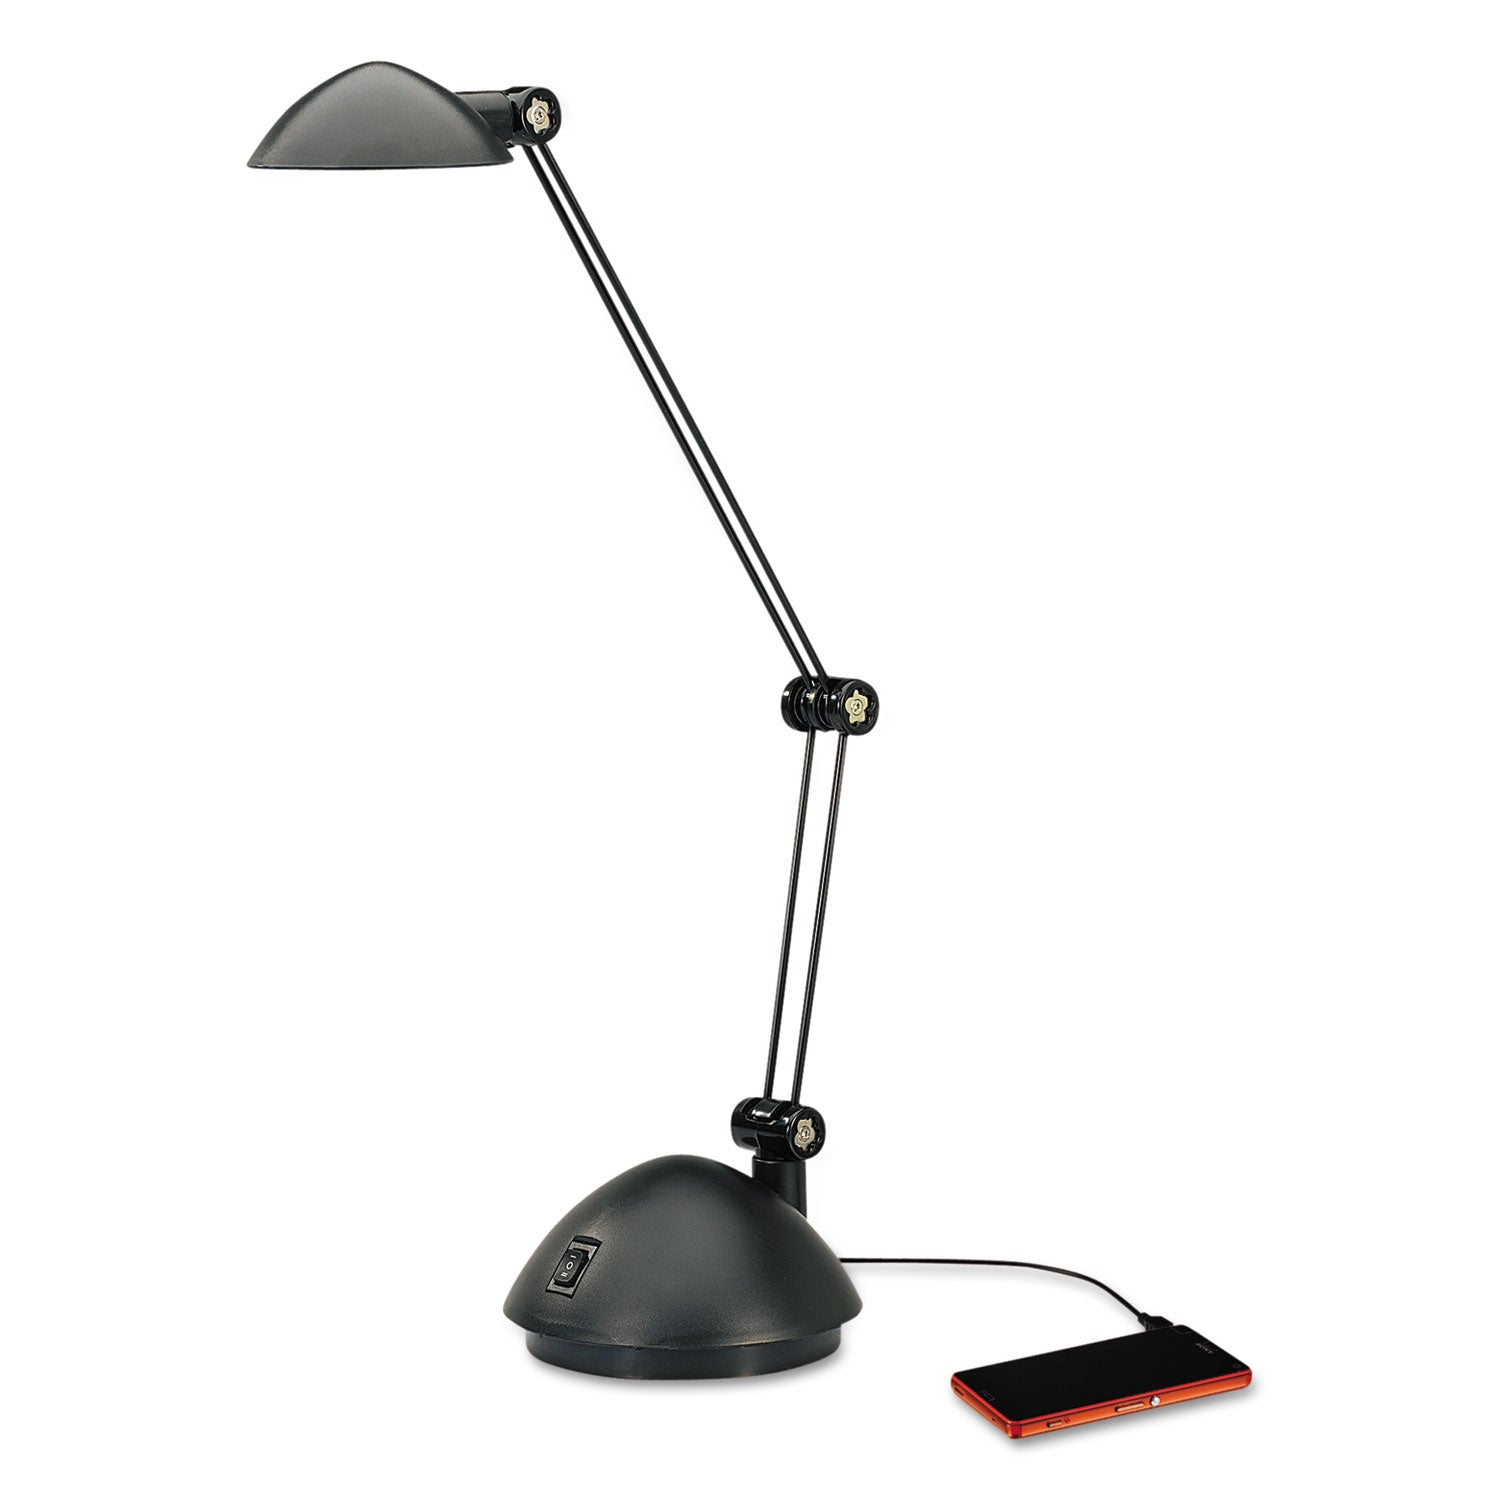 twin-arm-task-led-lamp-with-usb-port-1188w-x-513d-x-185h-black_aleled912b - 1